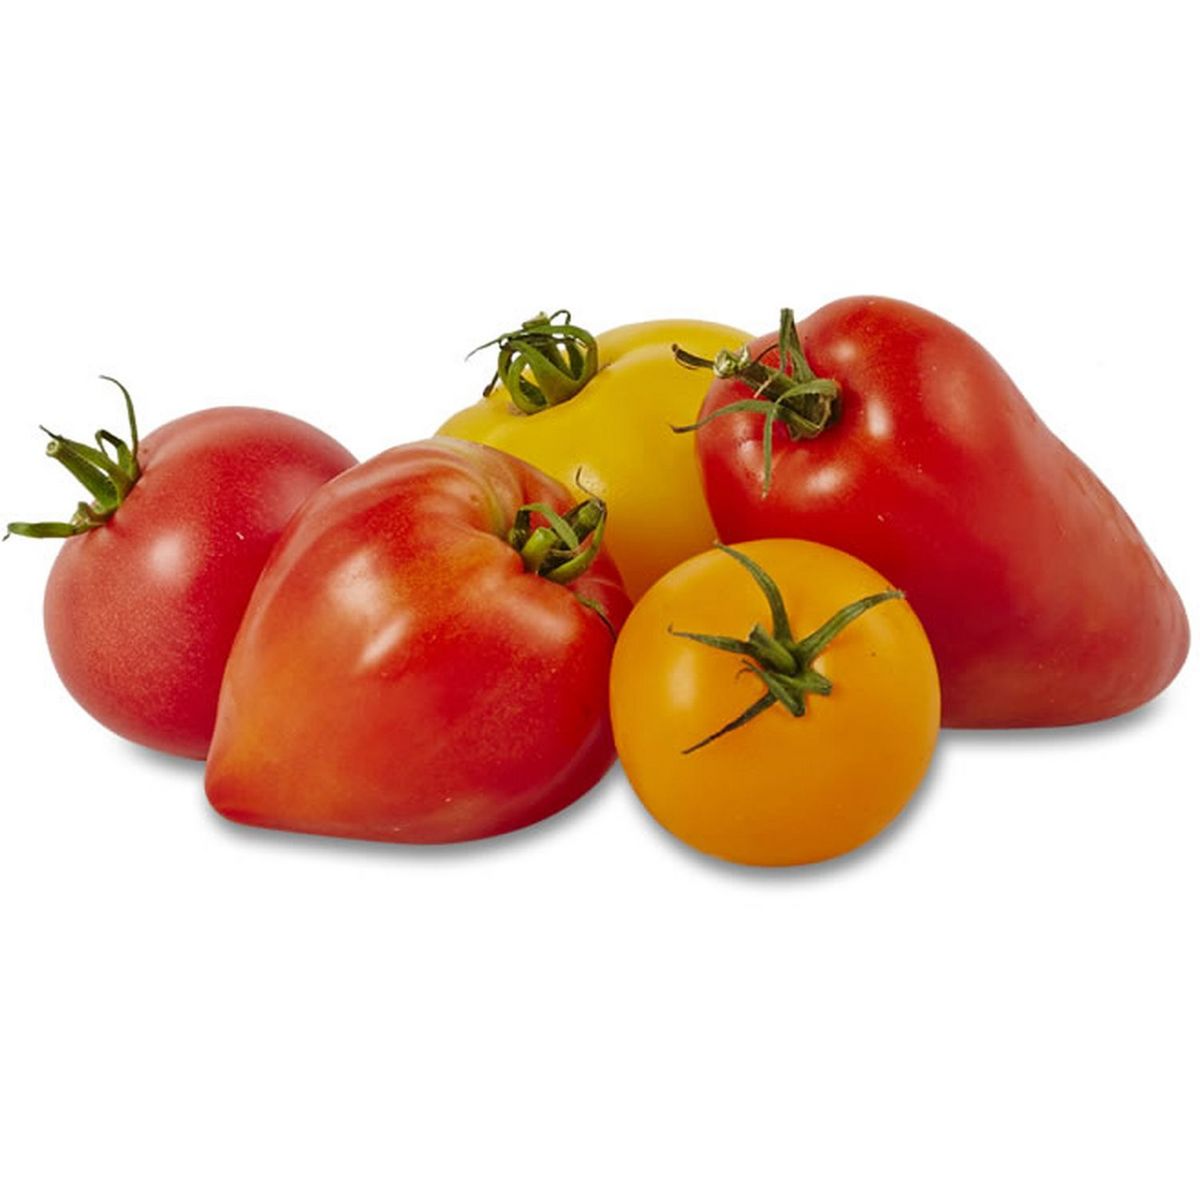 Quel est le juste prix d'un kilo de tomates ? - Challenges